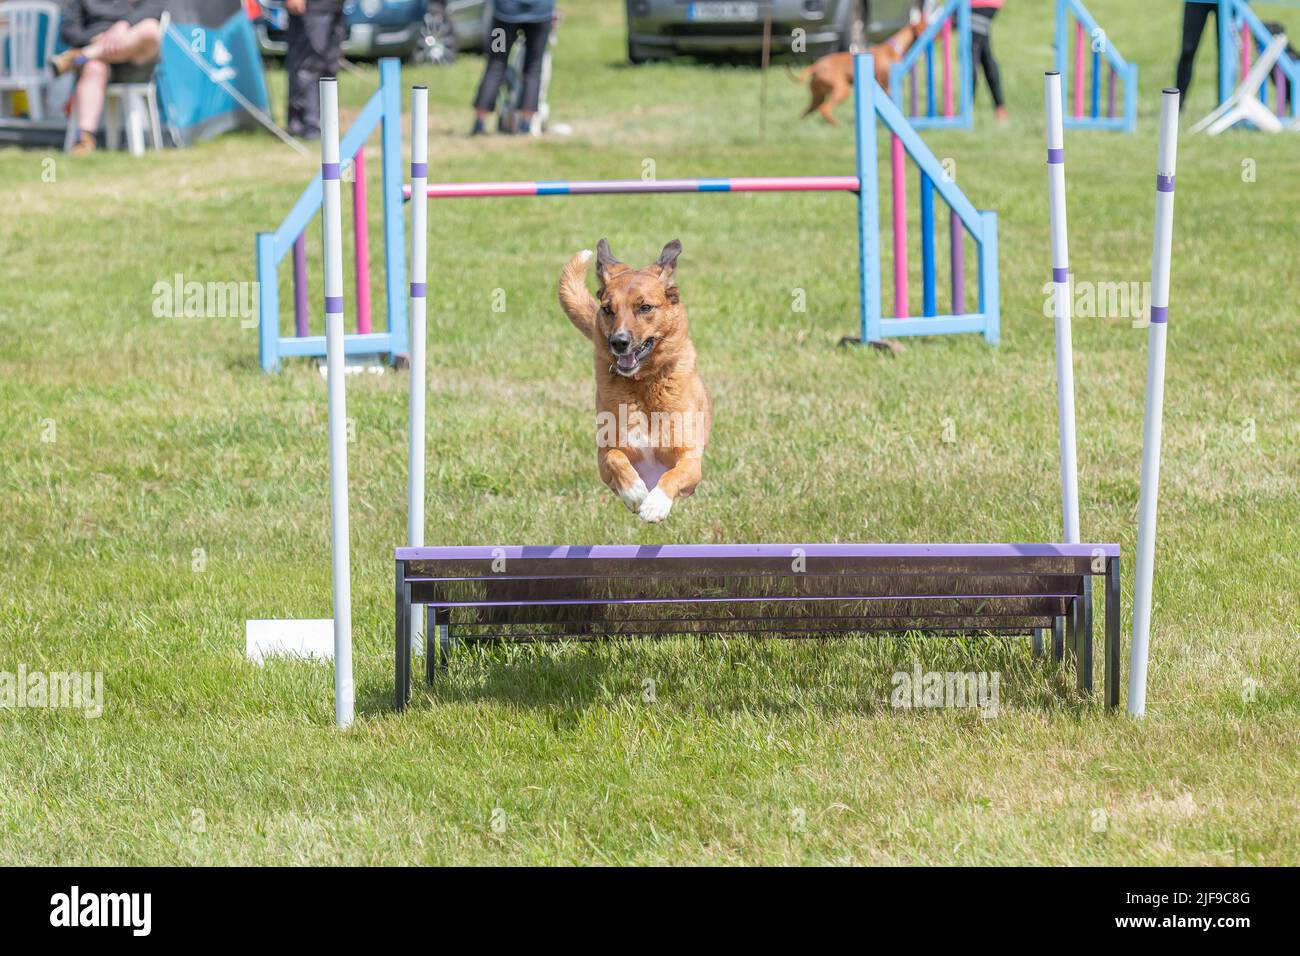 Perro saltando durante una competición de agilidad Foto de stock